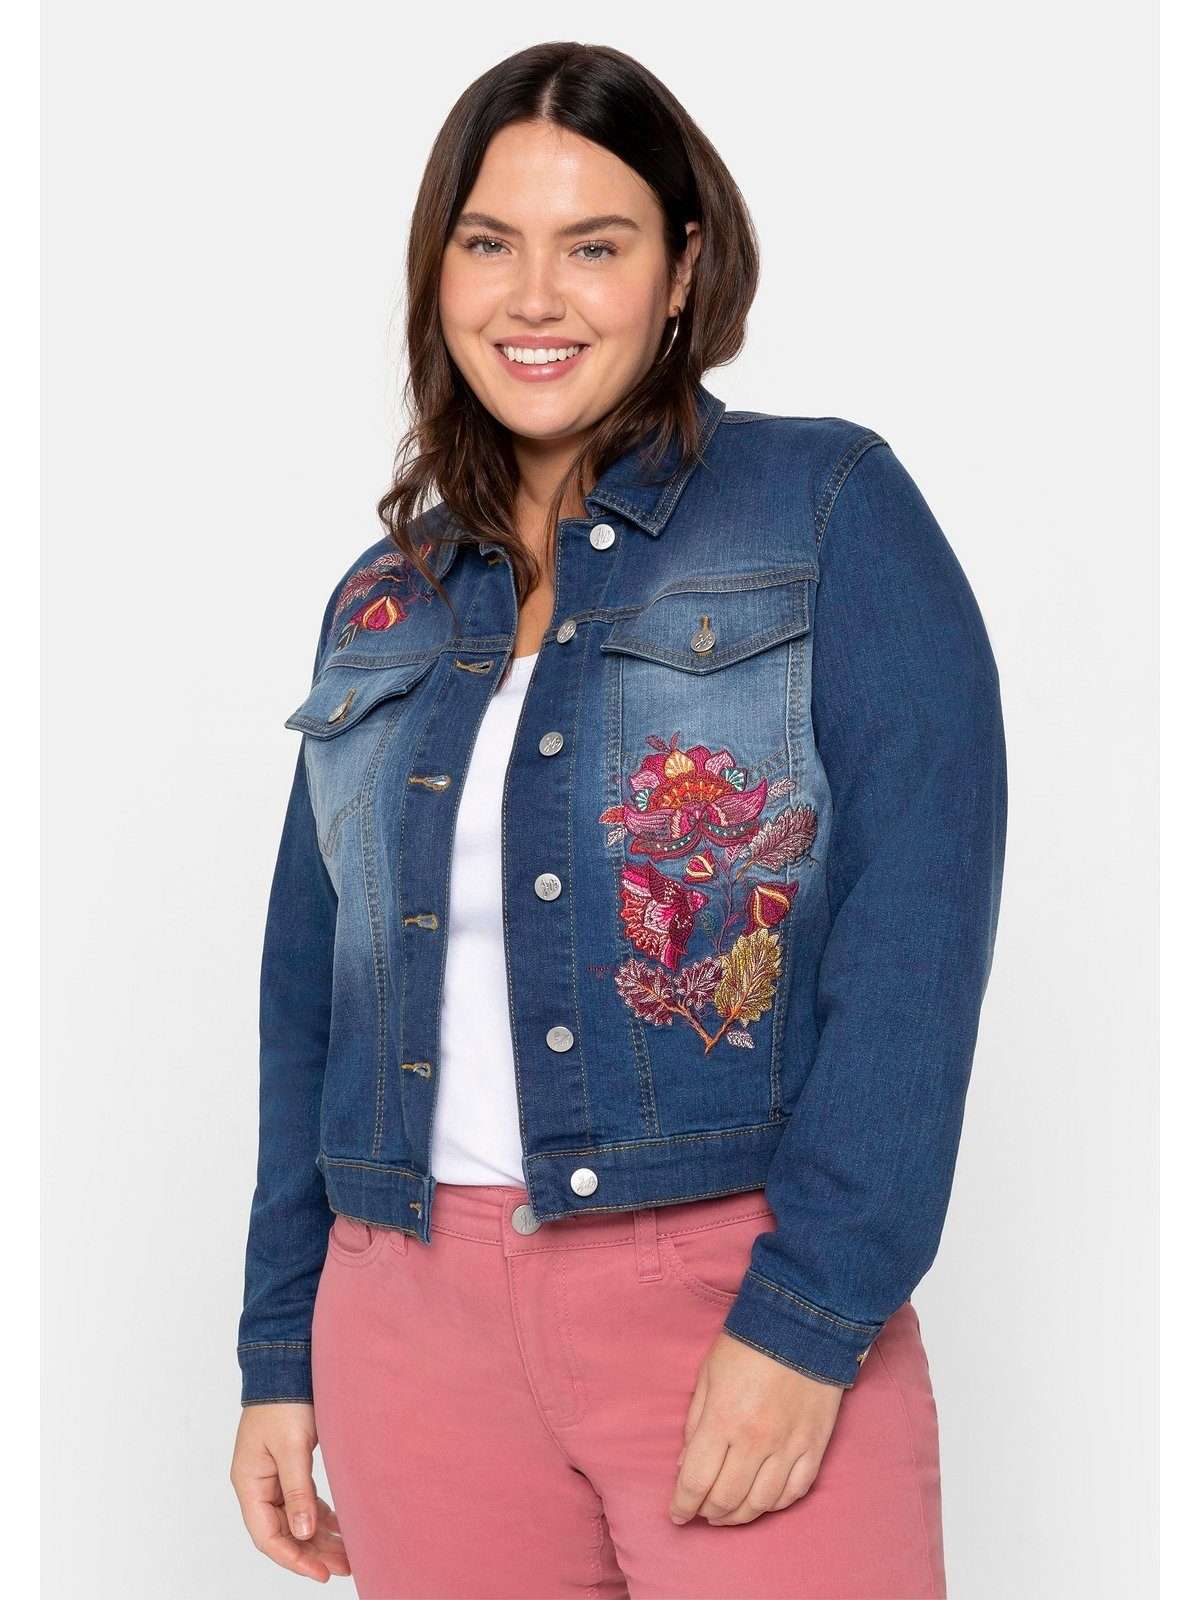 Джинсовая куртка больших размеров с цветочной вышивкой